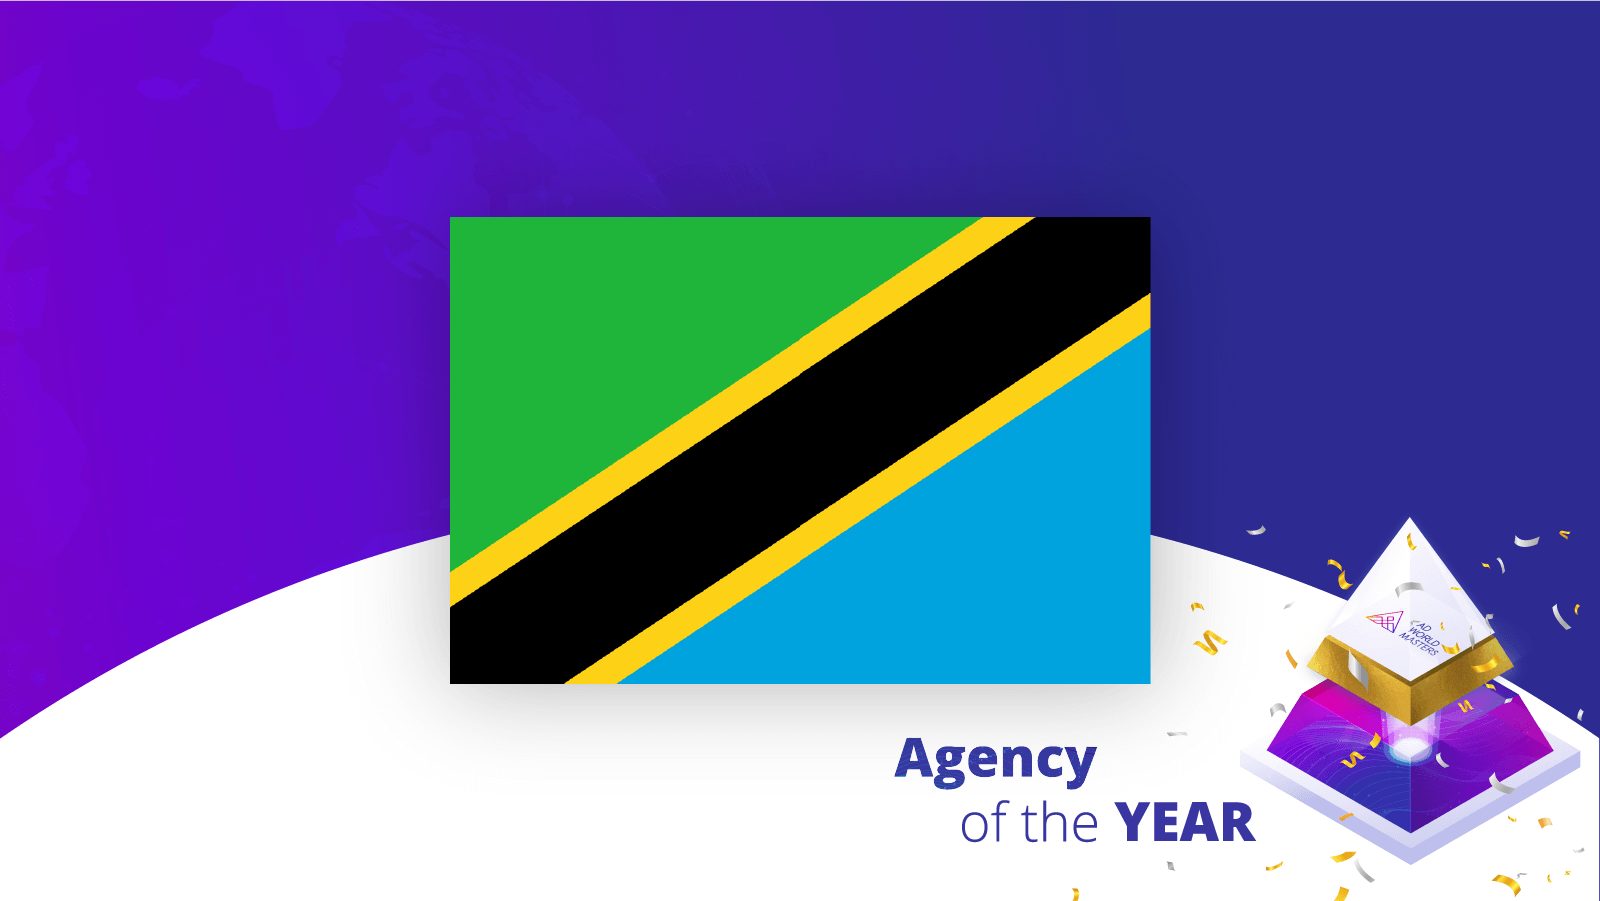 Agencies of the Year Tanzania